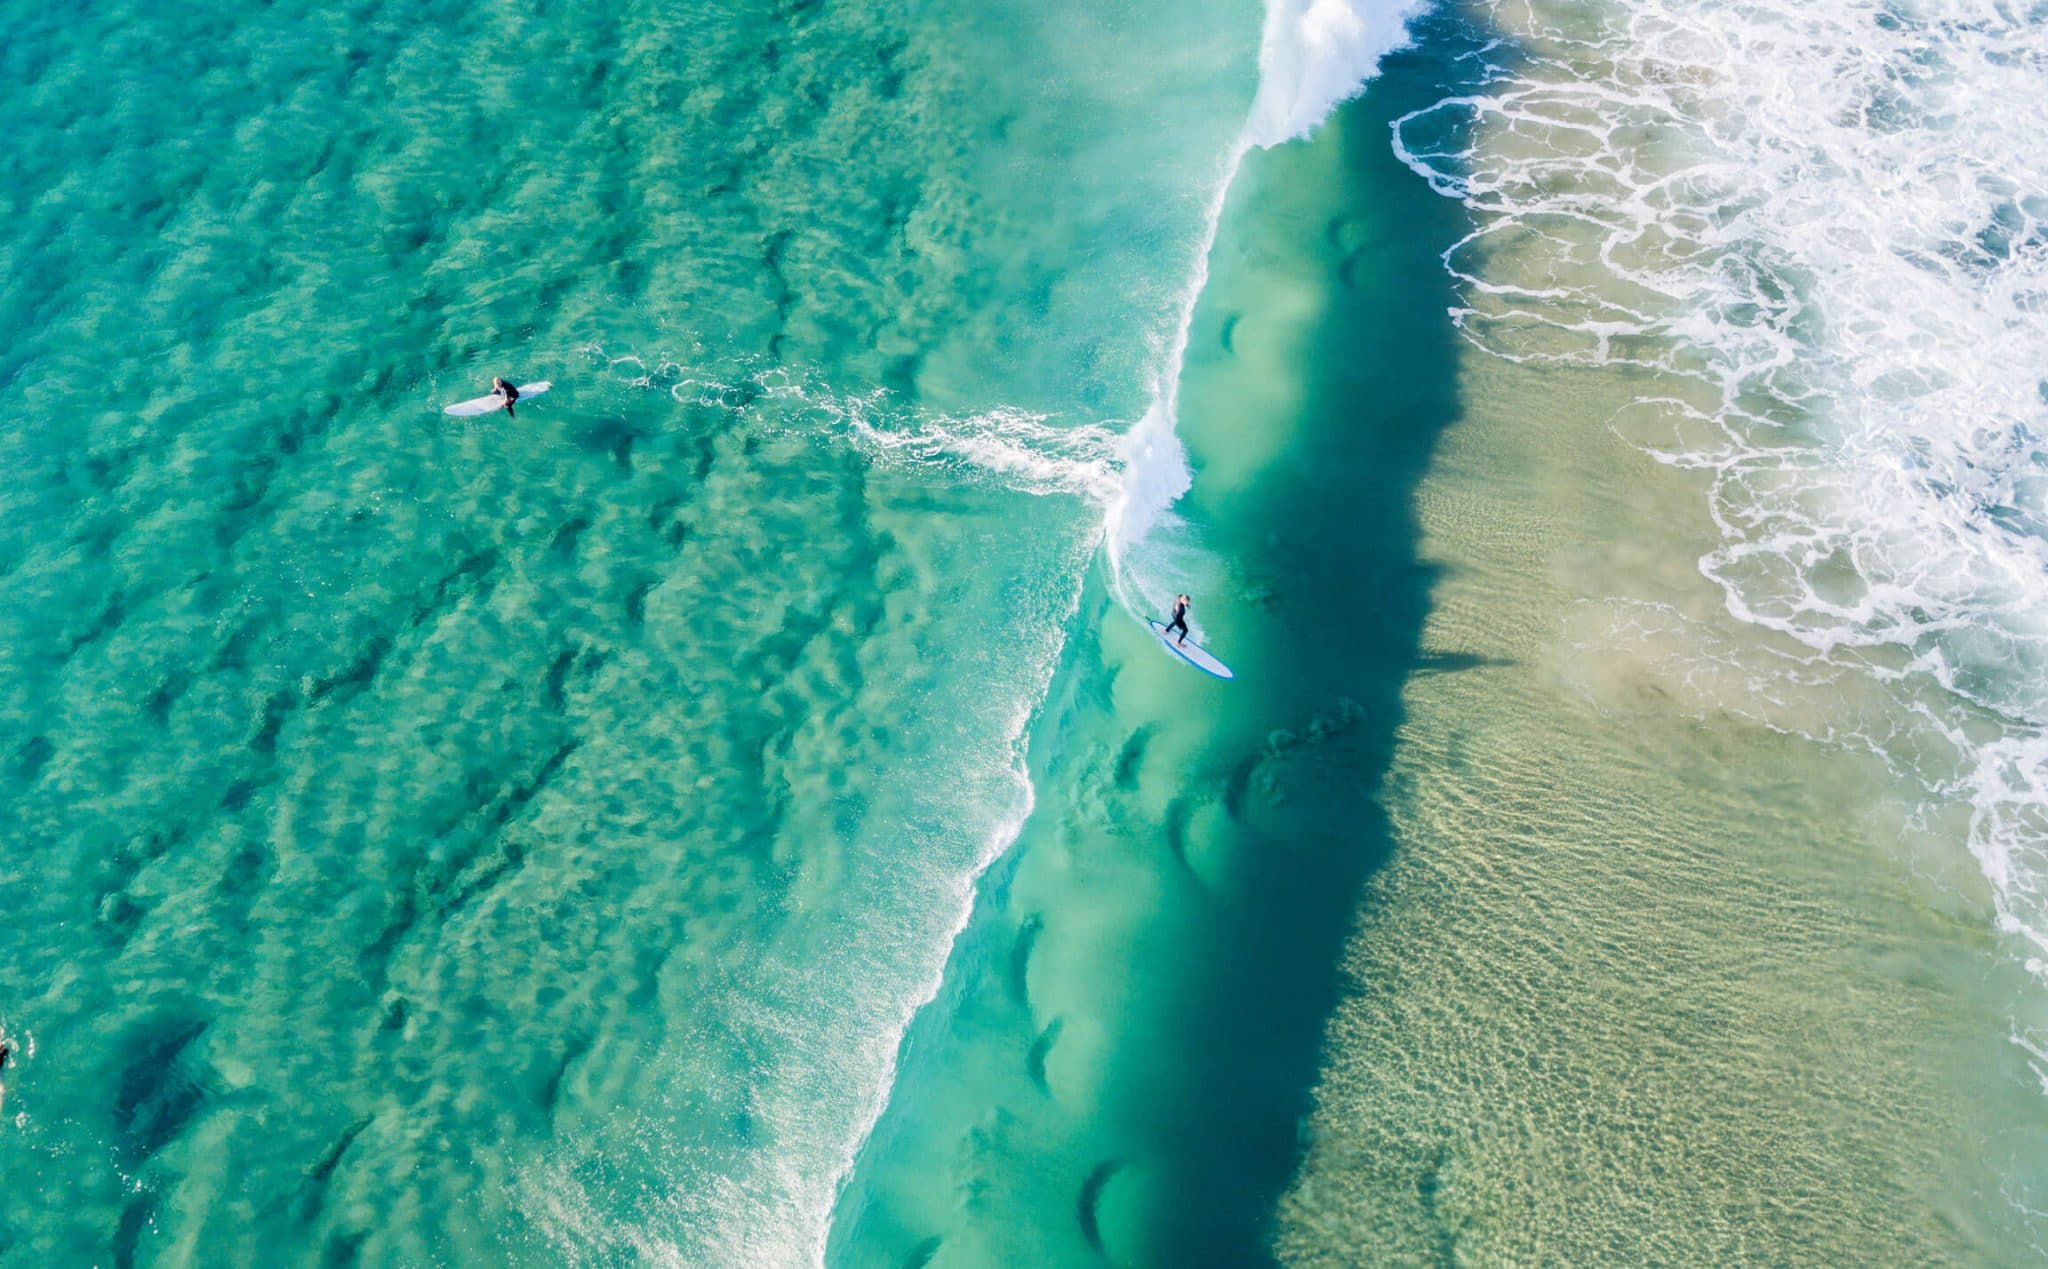 Surfing Australia